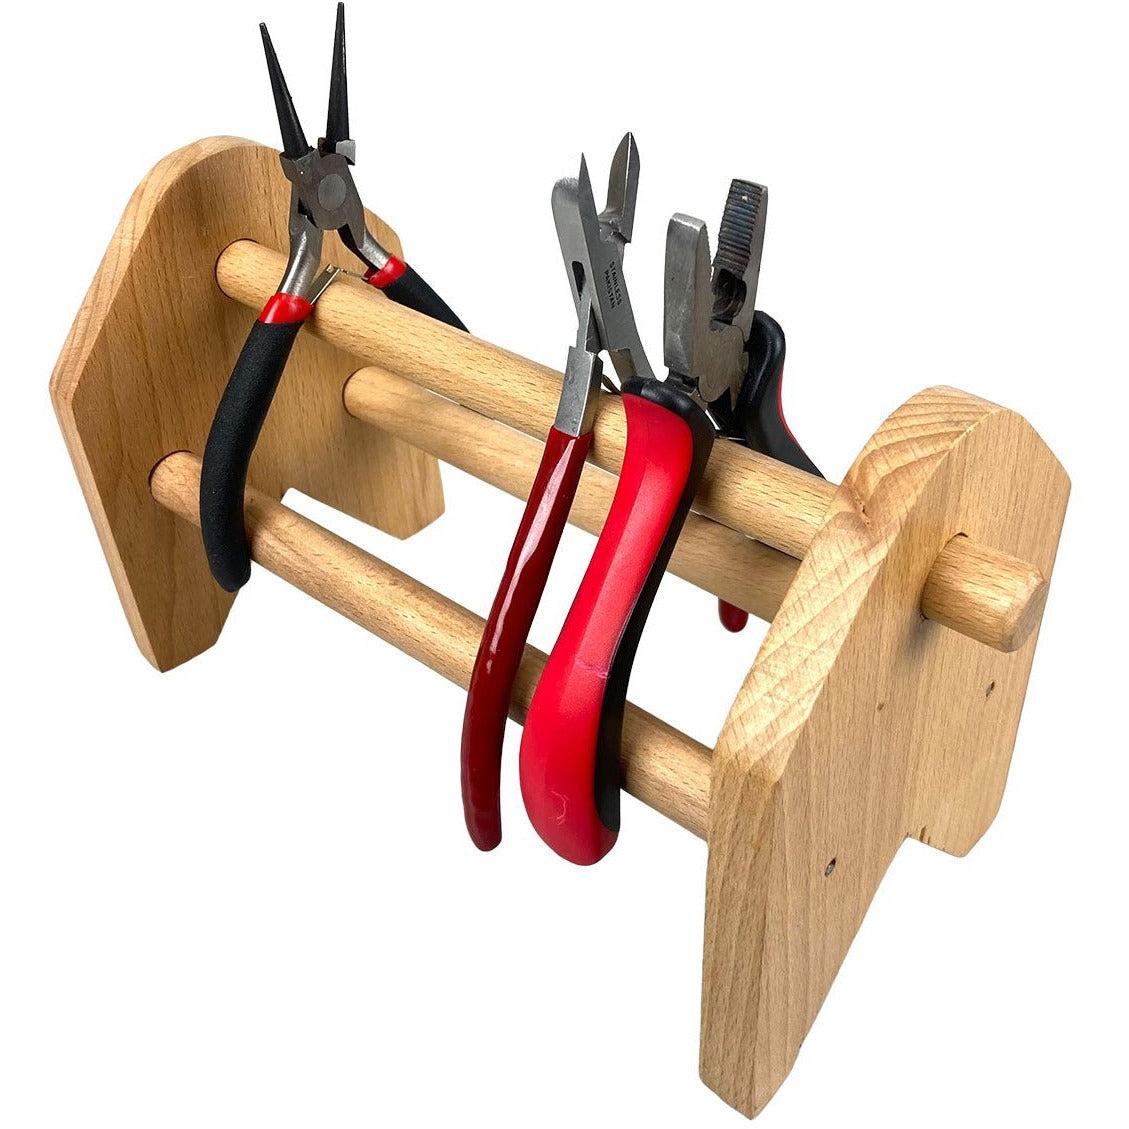 Wooden Pliers Organizer - TJ-11585 - ToolUSA